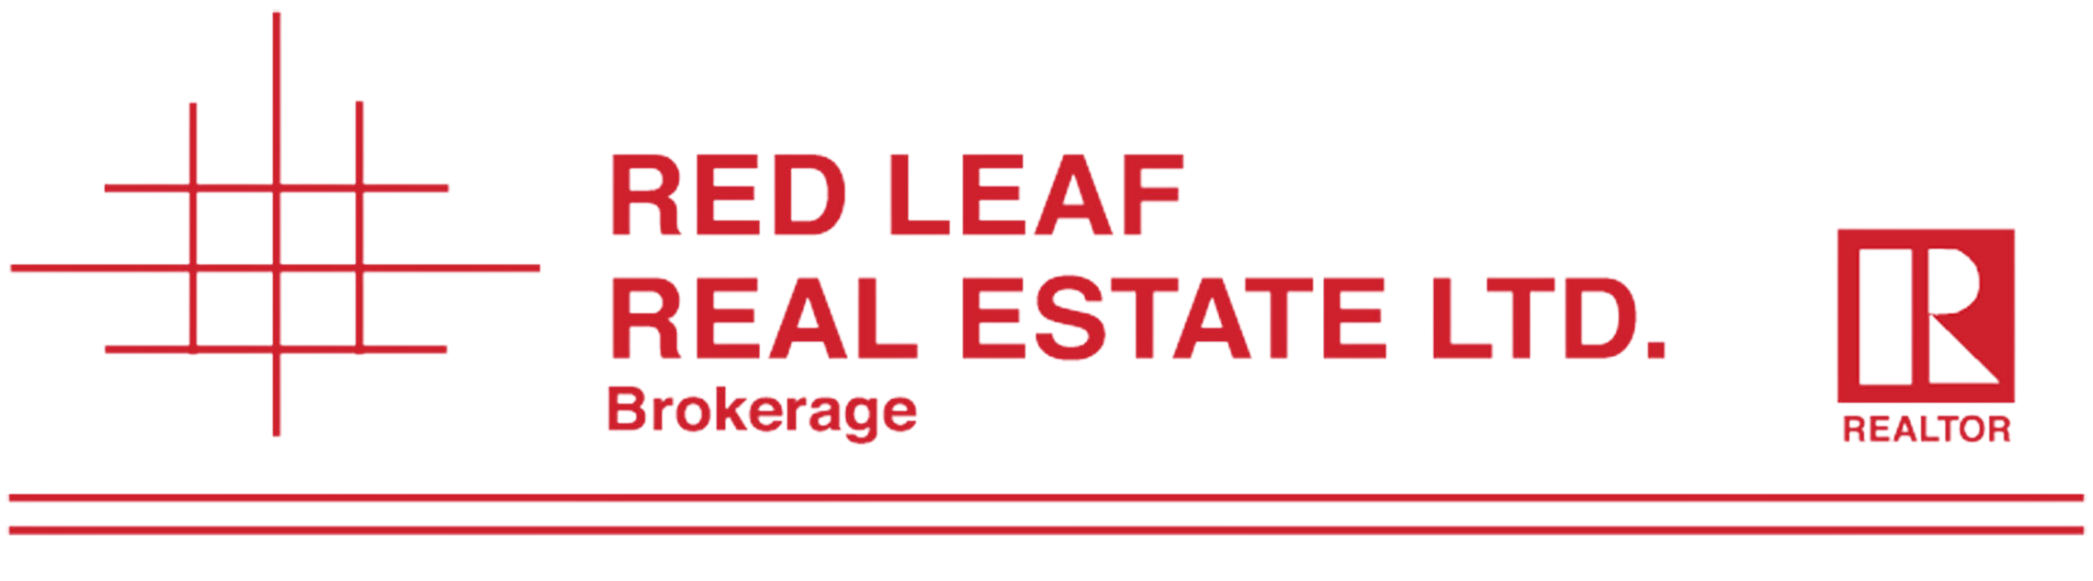 Red-Leaf-Real-Estate-ltd